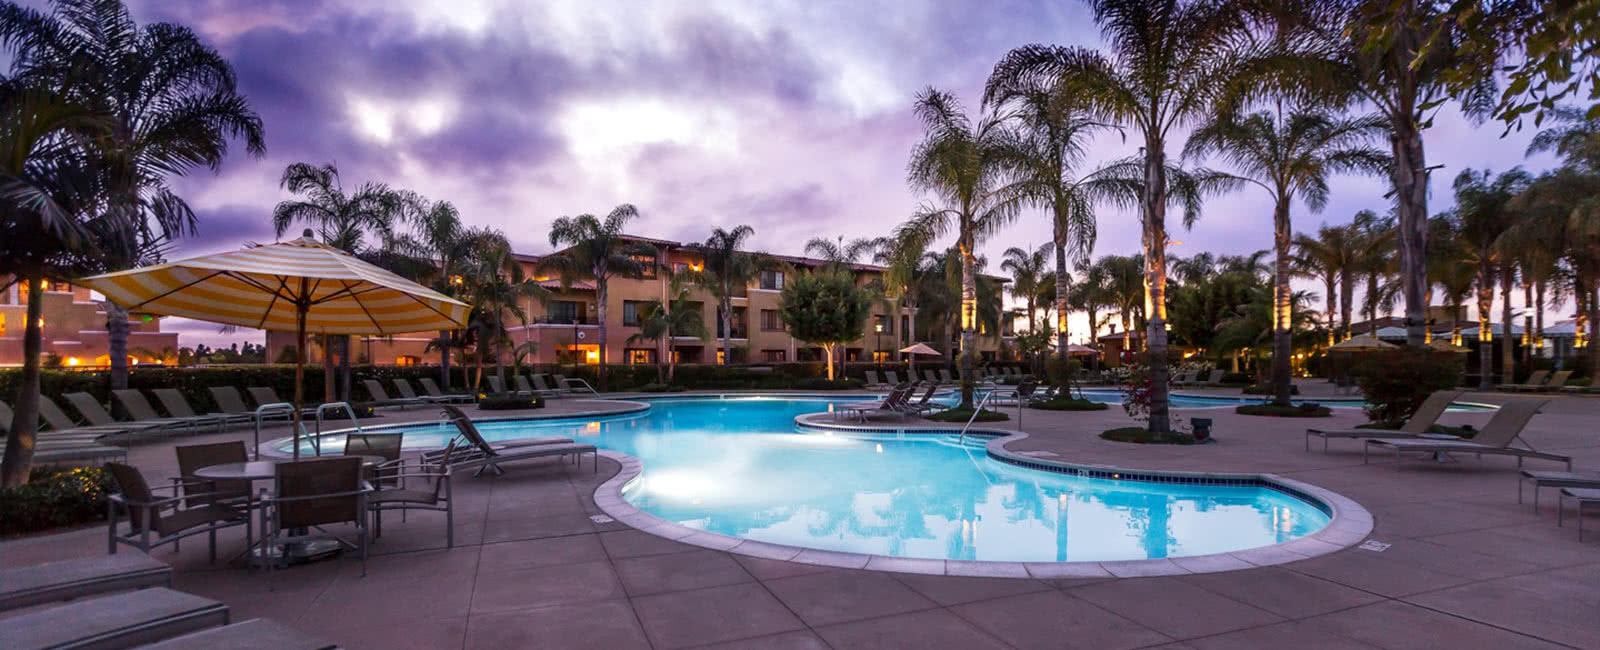 Pool Area at MarBrisa Resort in Carlsbad, California